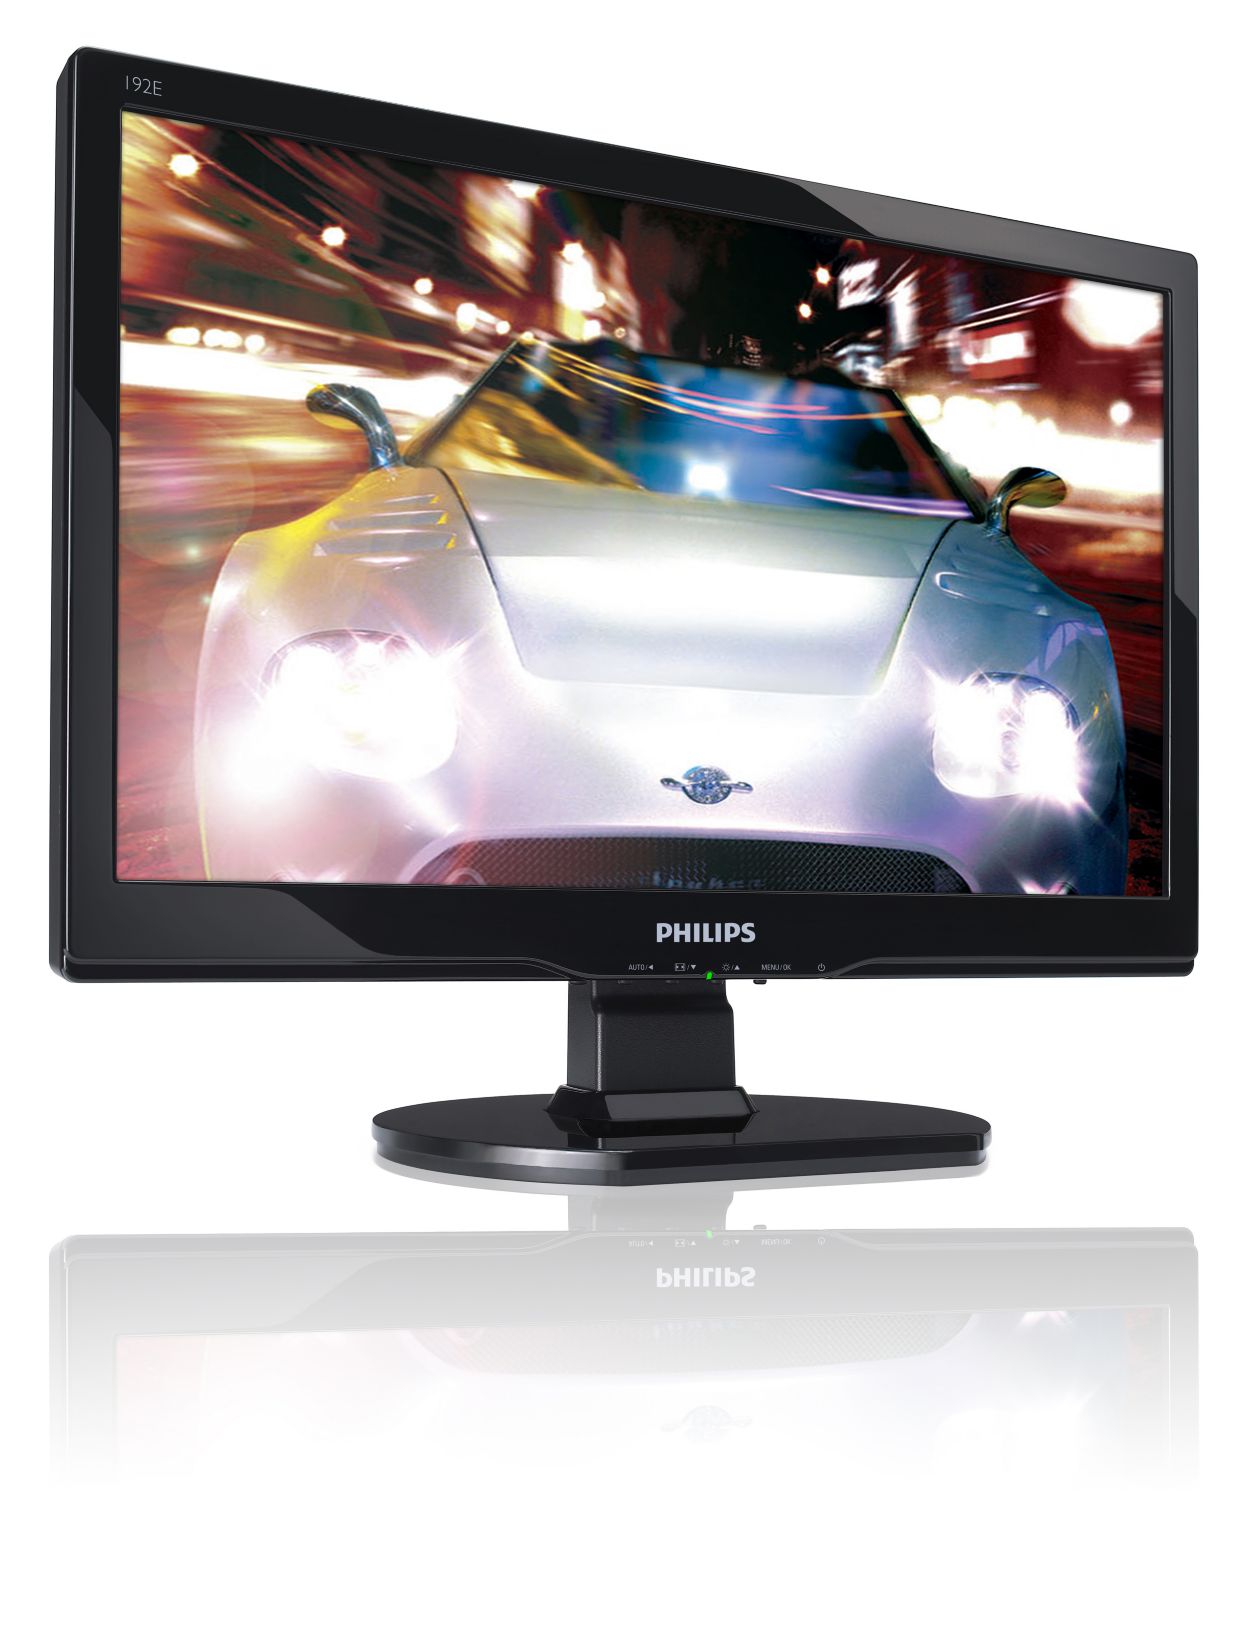 LCD widescreen monitor 192E1SB/97 | Philips